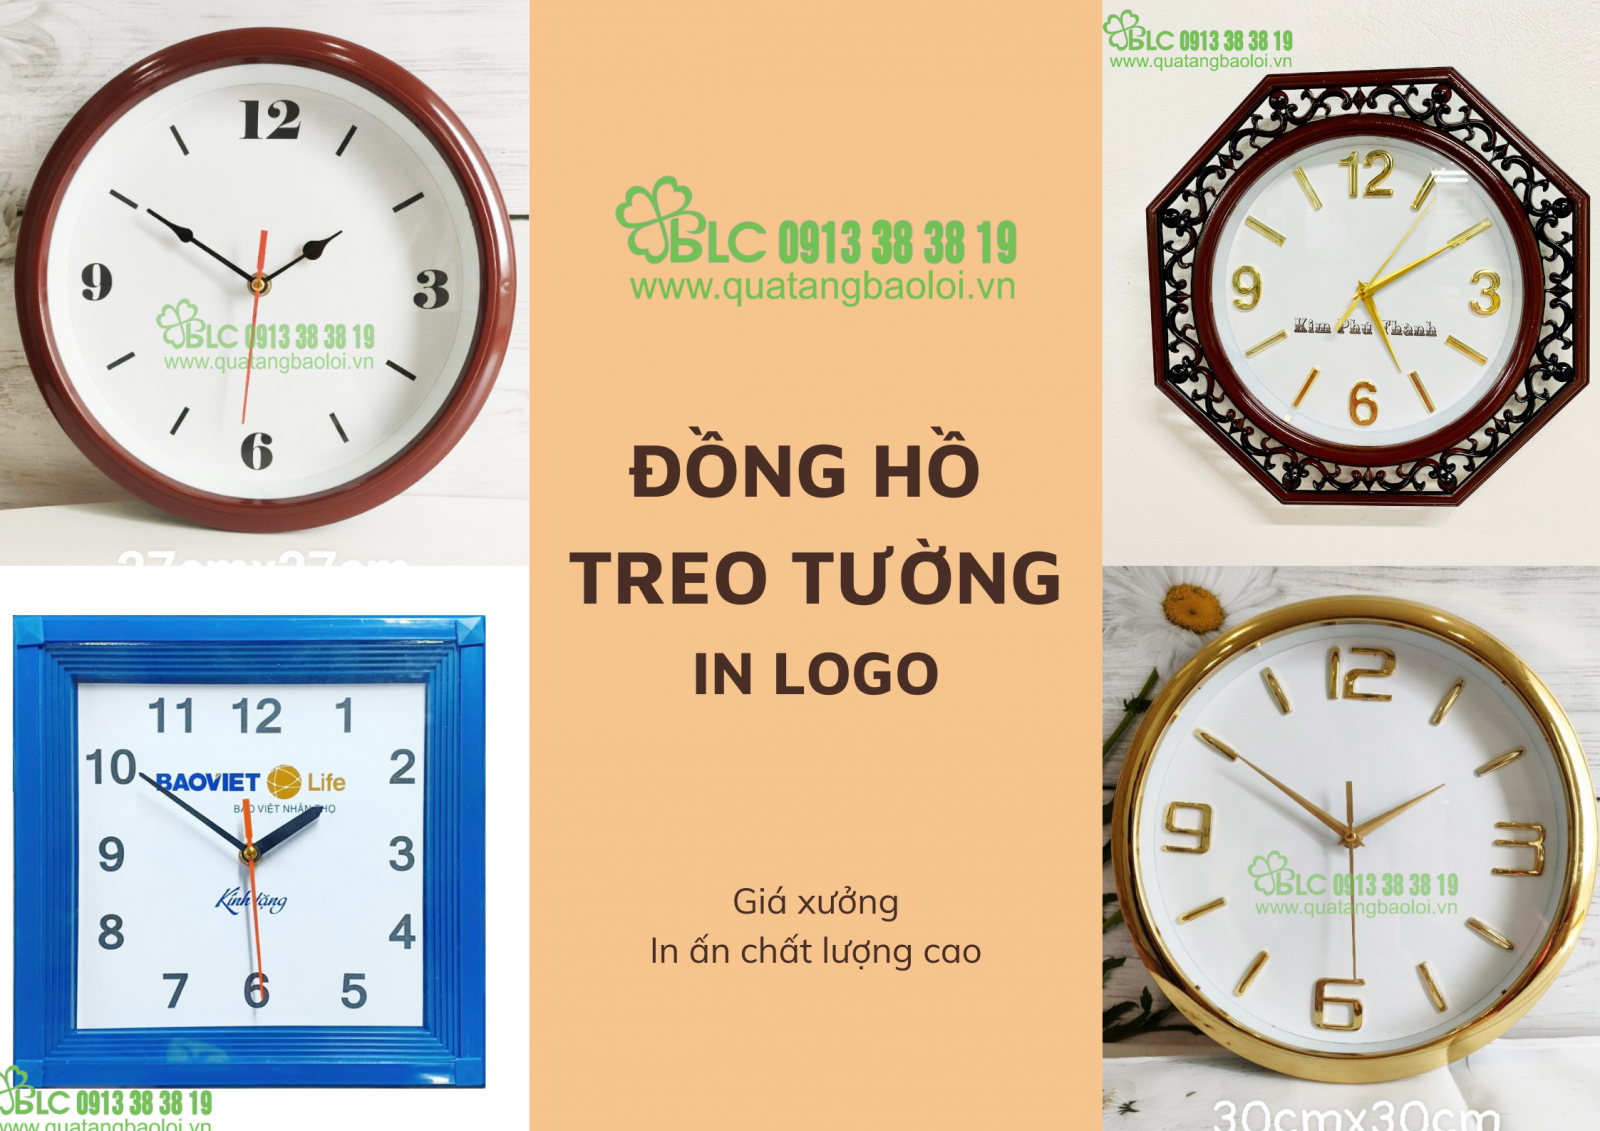 Đồng hồ treo tường in logo - Giá xưởng, in ấn chất lượng cao